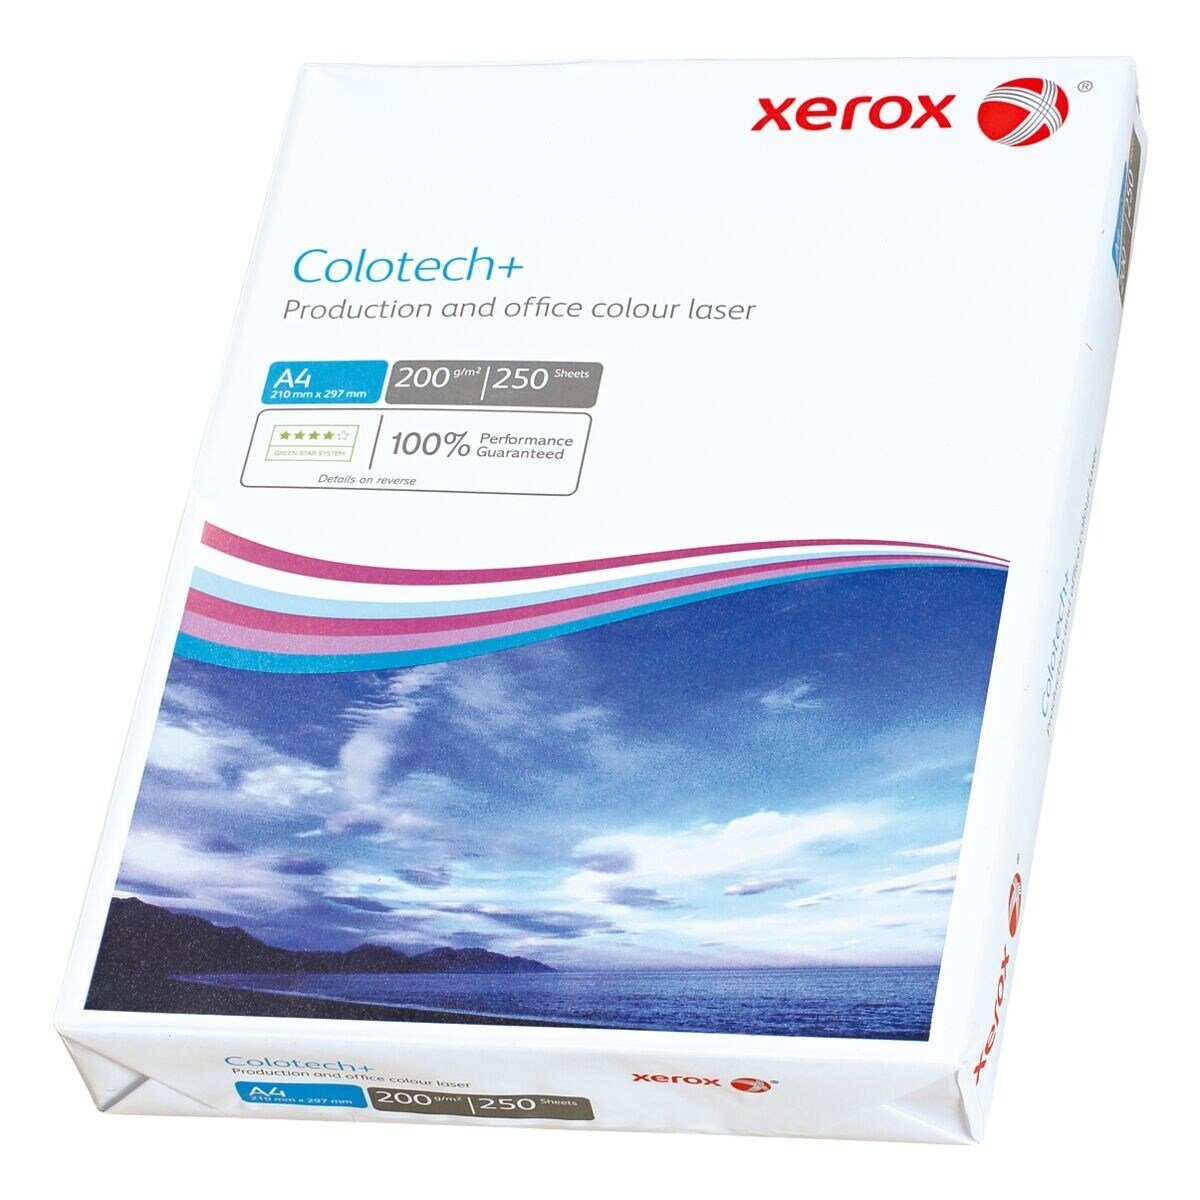 Xerox Farblaser-Druckerpapier Colotech+, Format DIN 250 200 g/m², Blatt A4